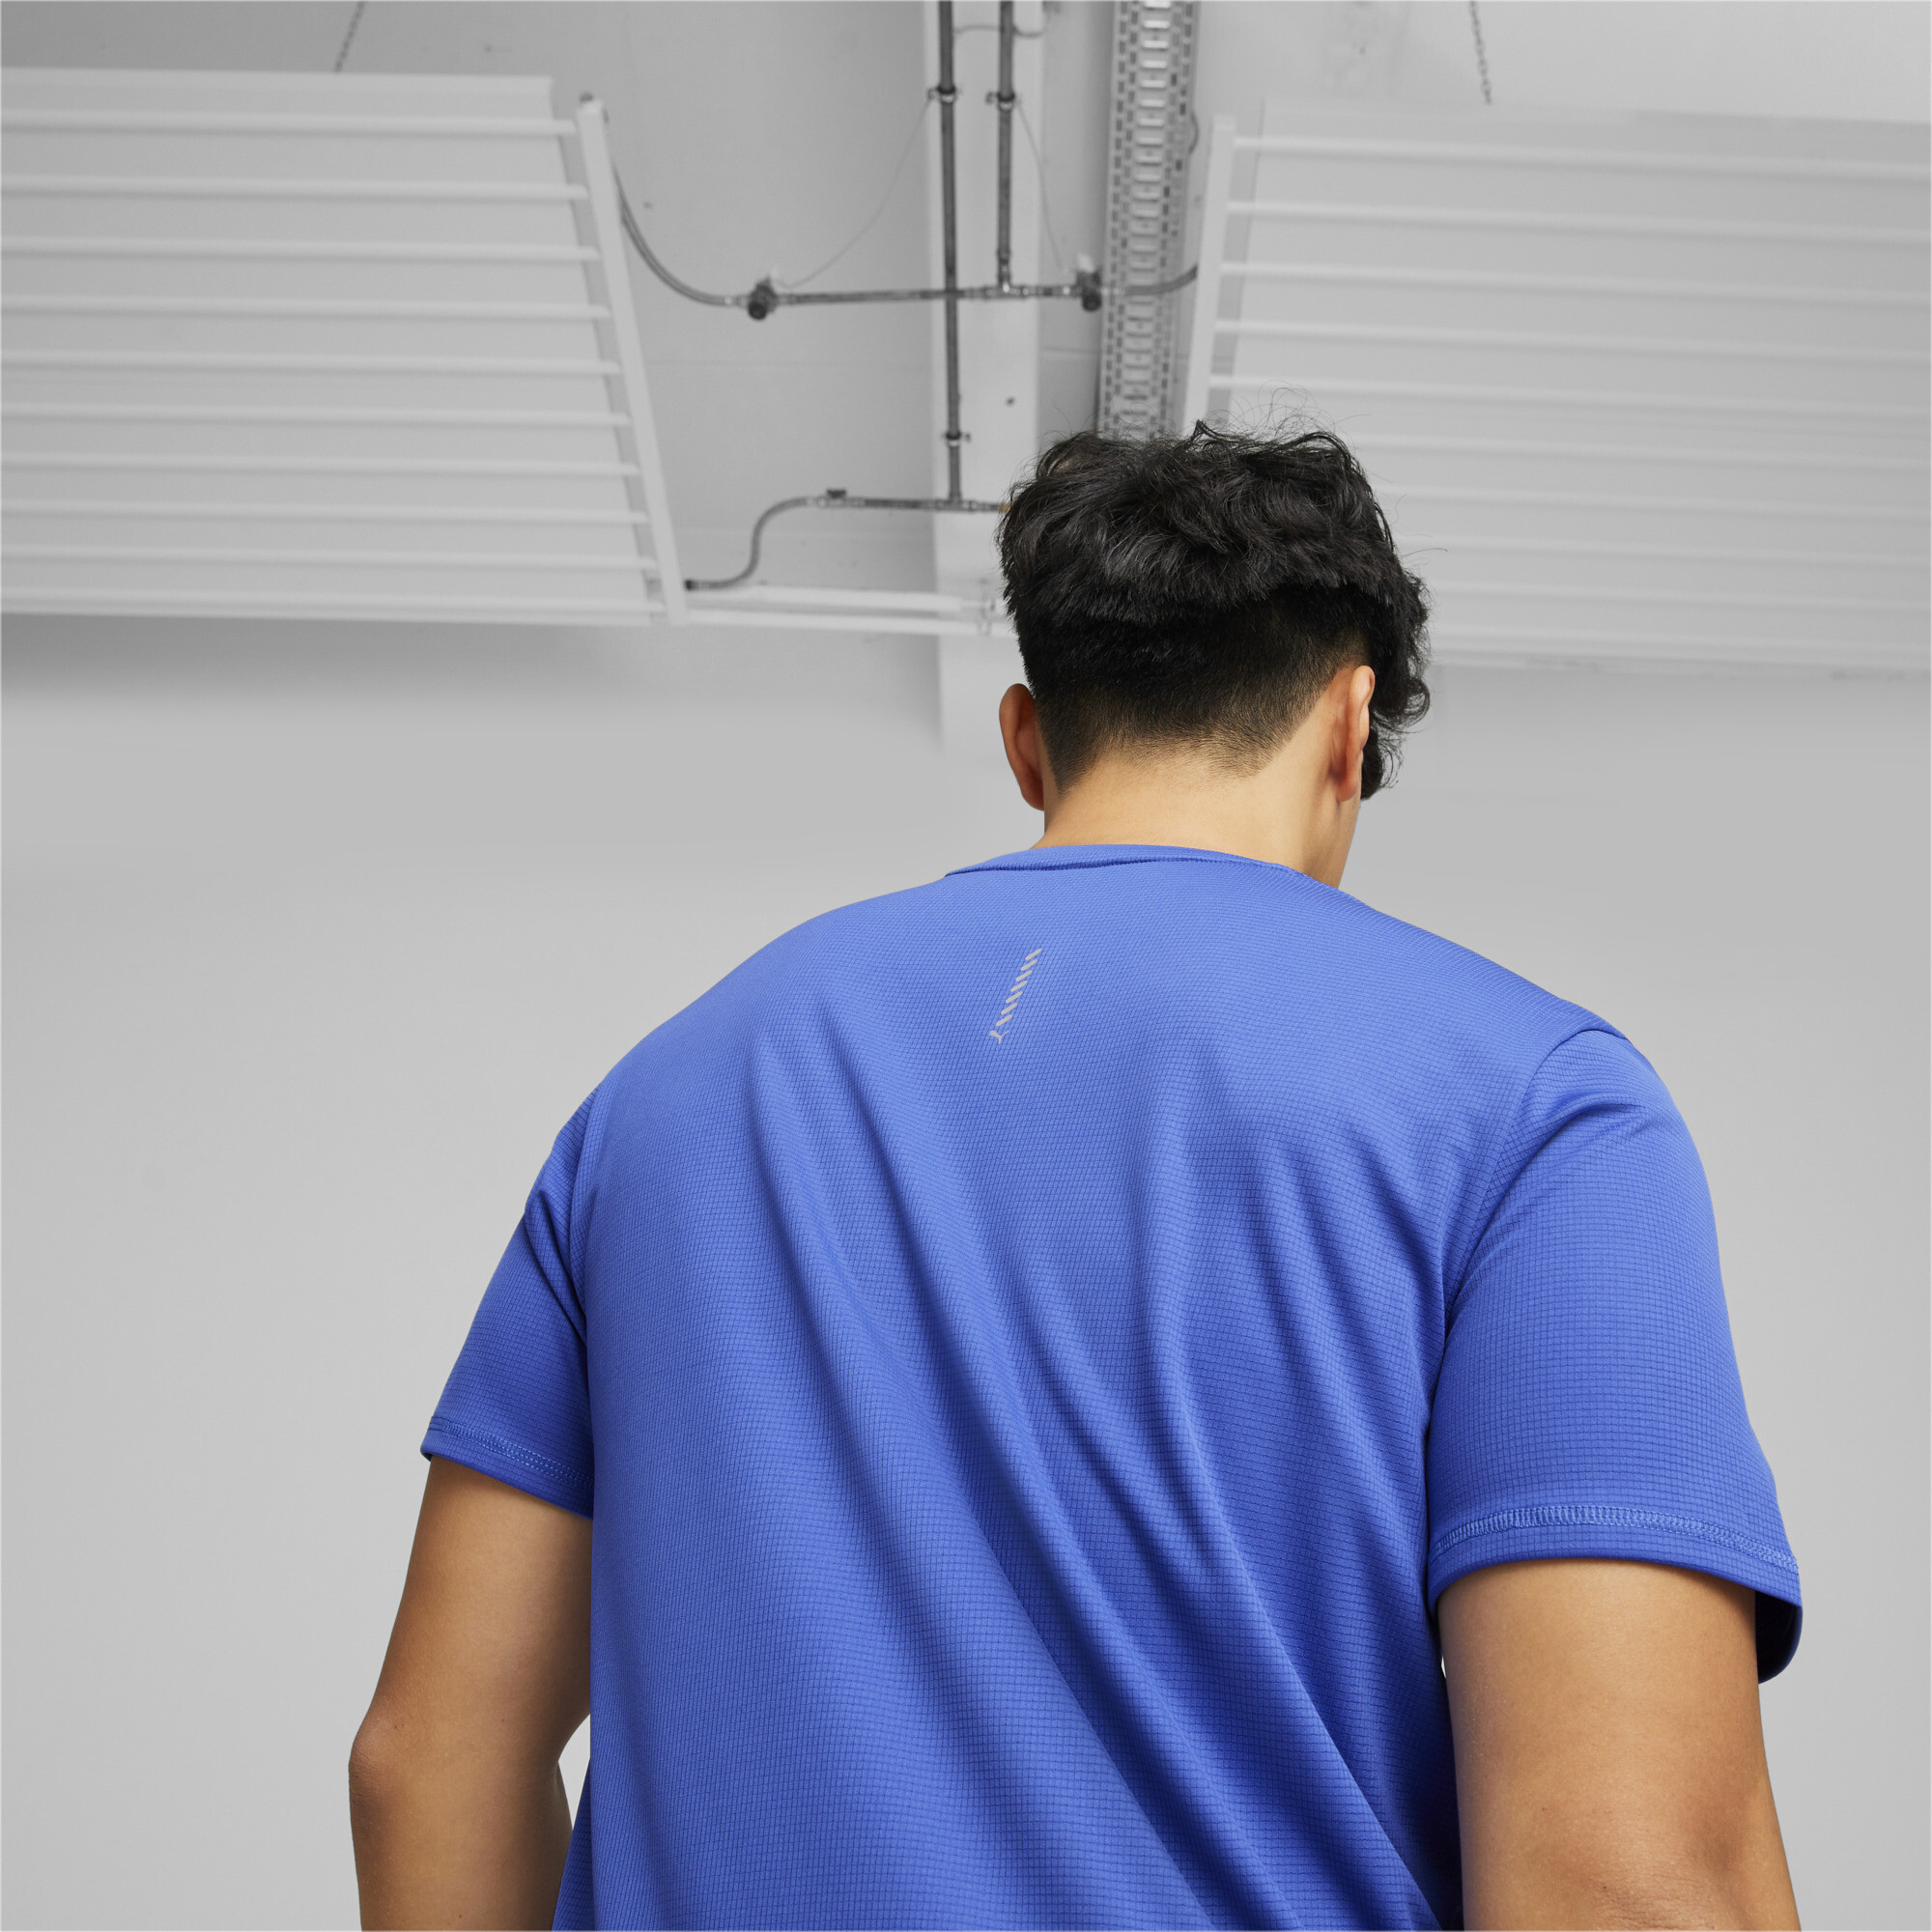 Men's PUMA Run Favourite Logo T-Shirt Men In 80 - Blue, Size XS